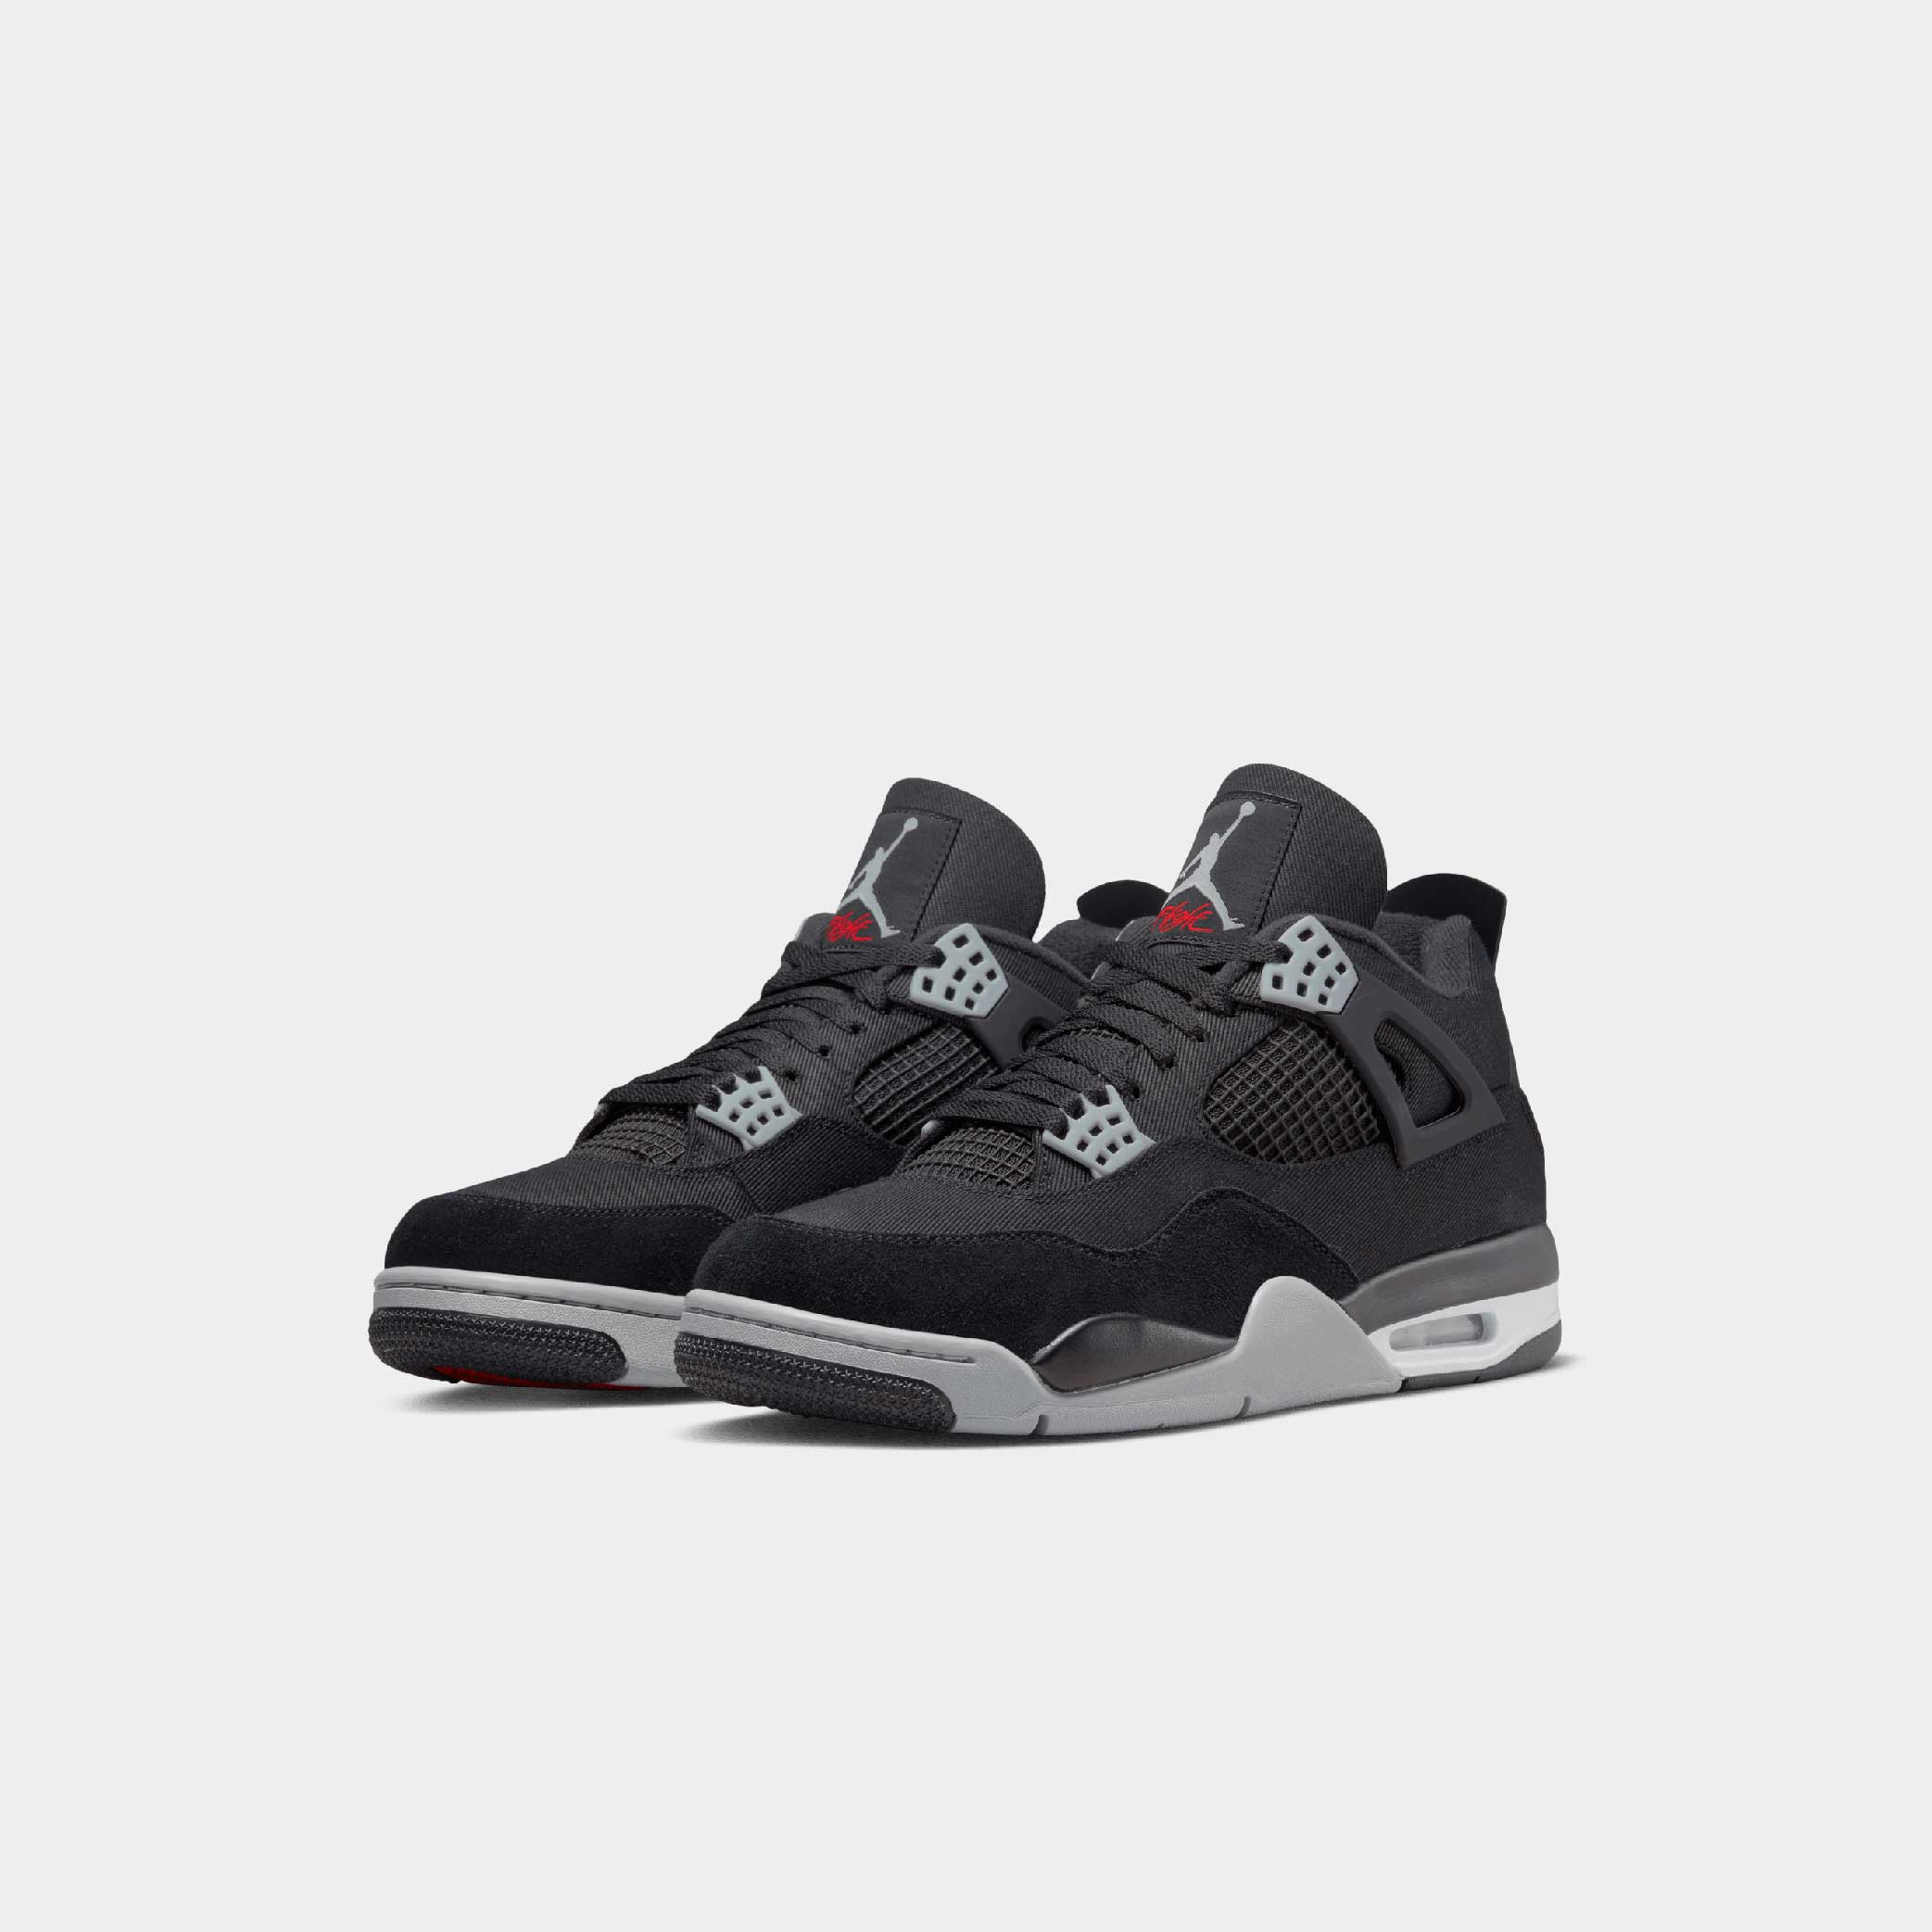 24,000円Nike Air Jordan 4 Black and Light Steel